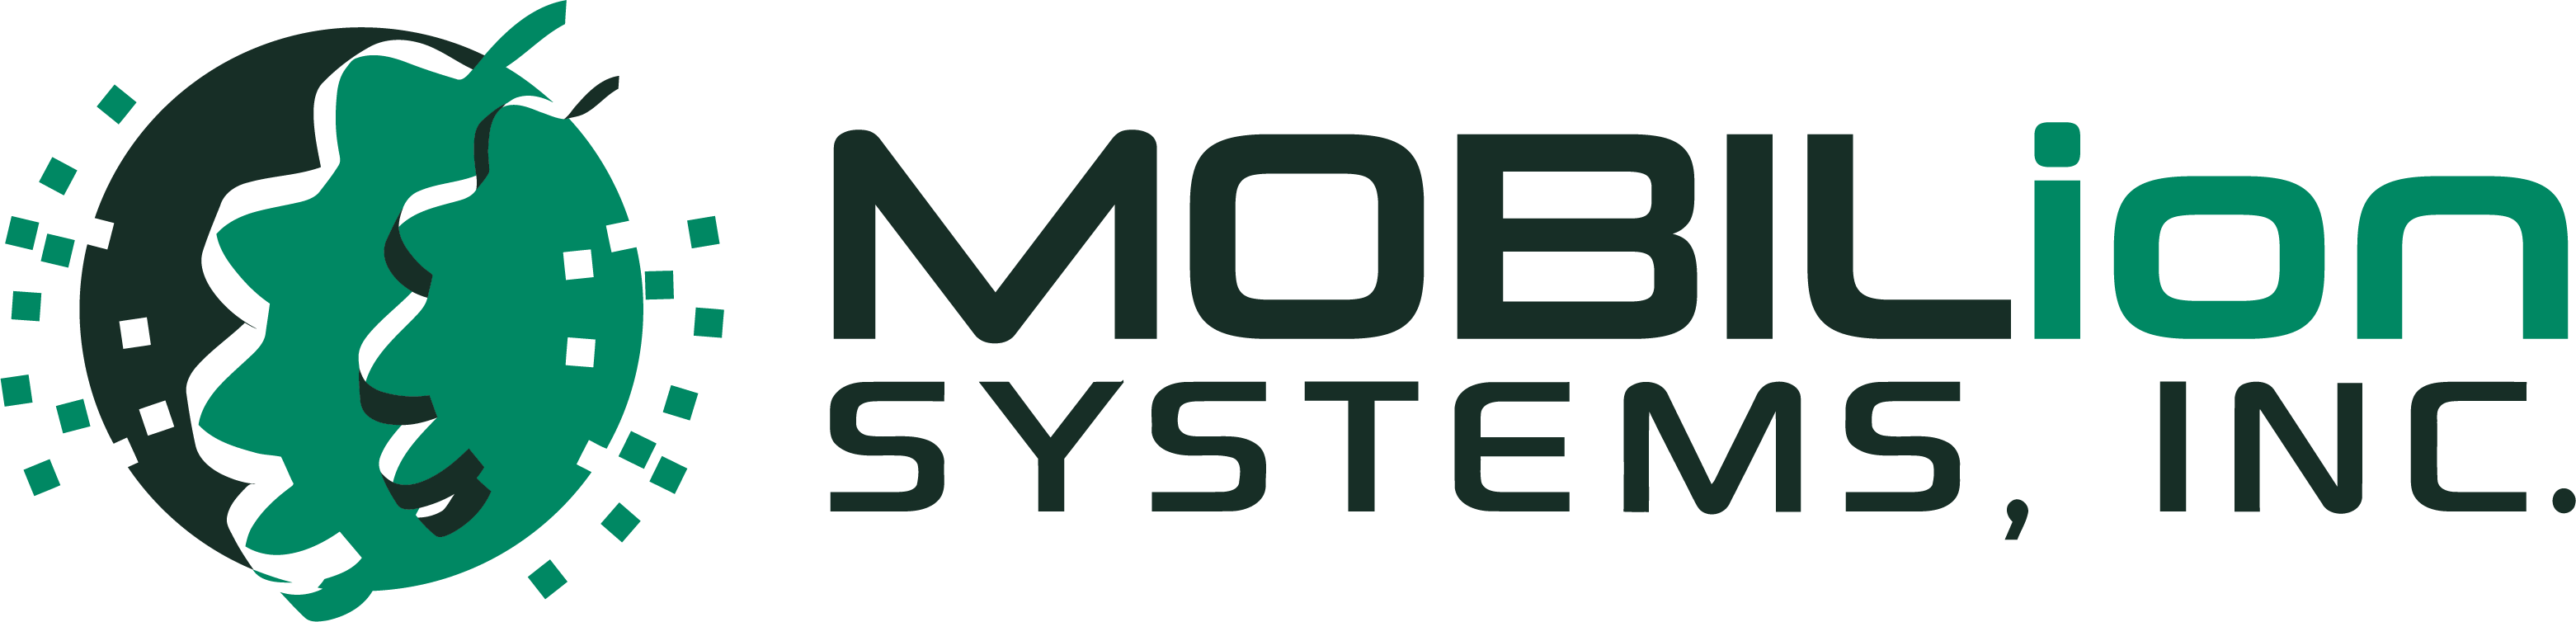 MOBILion_Color_Horizontal_Logo